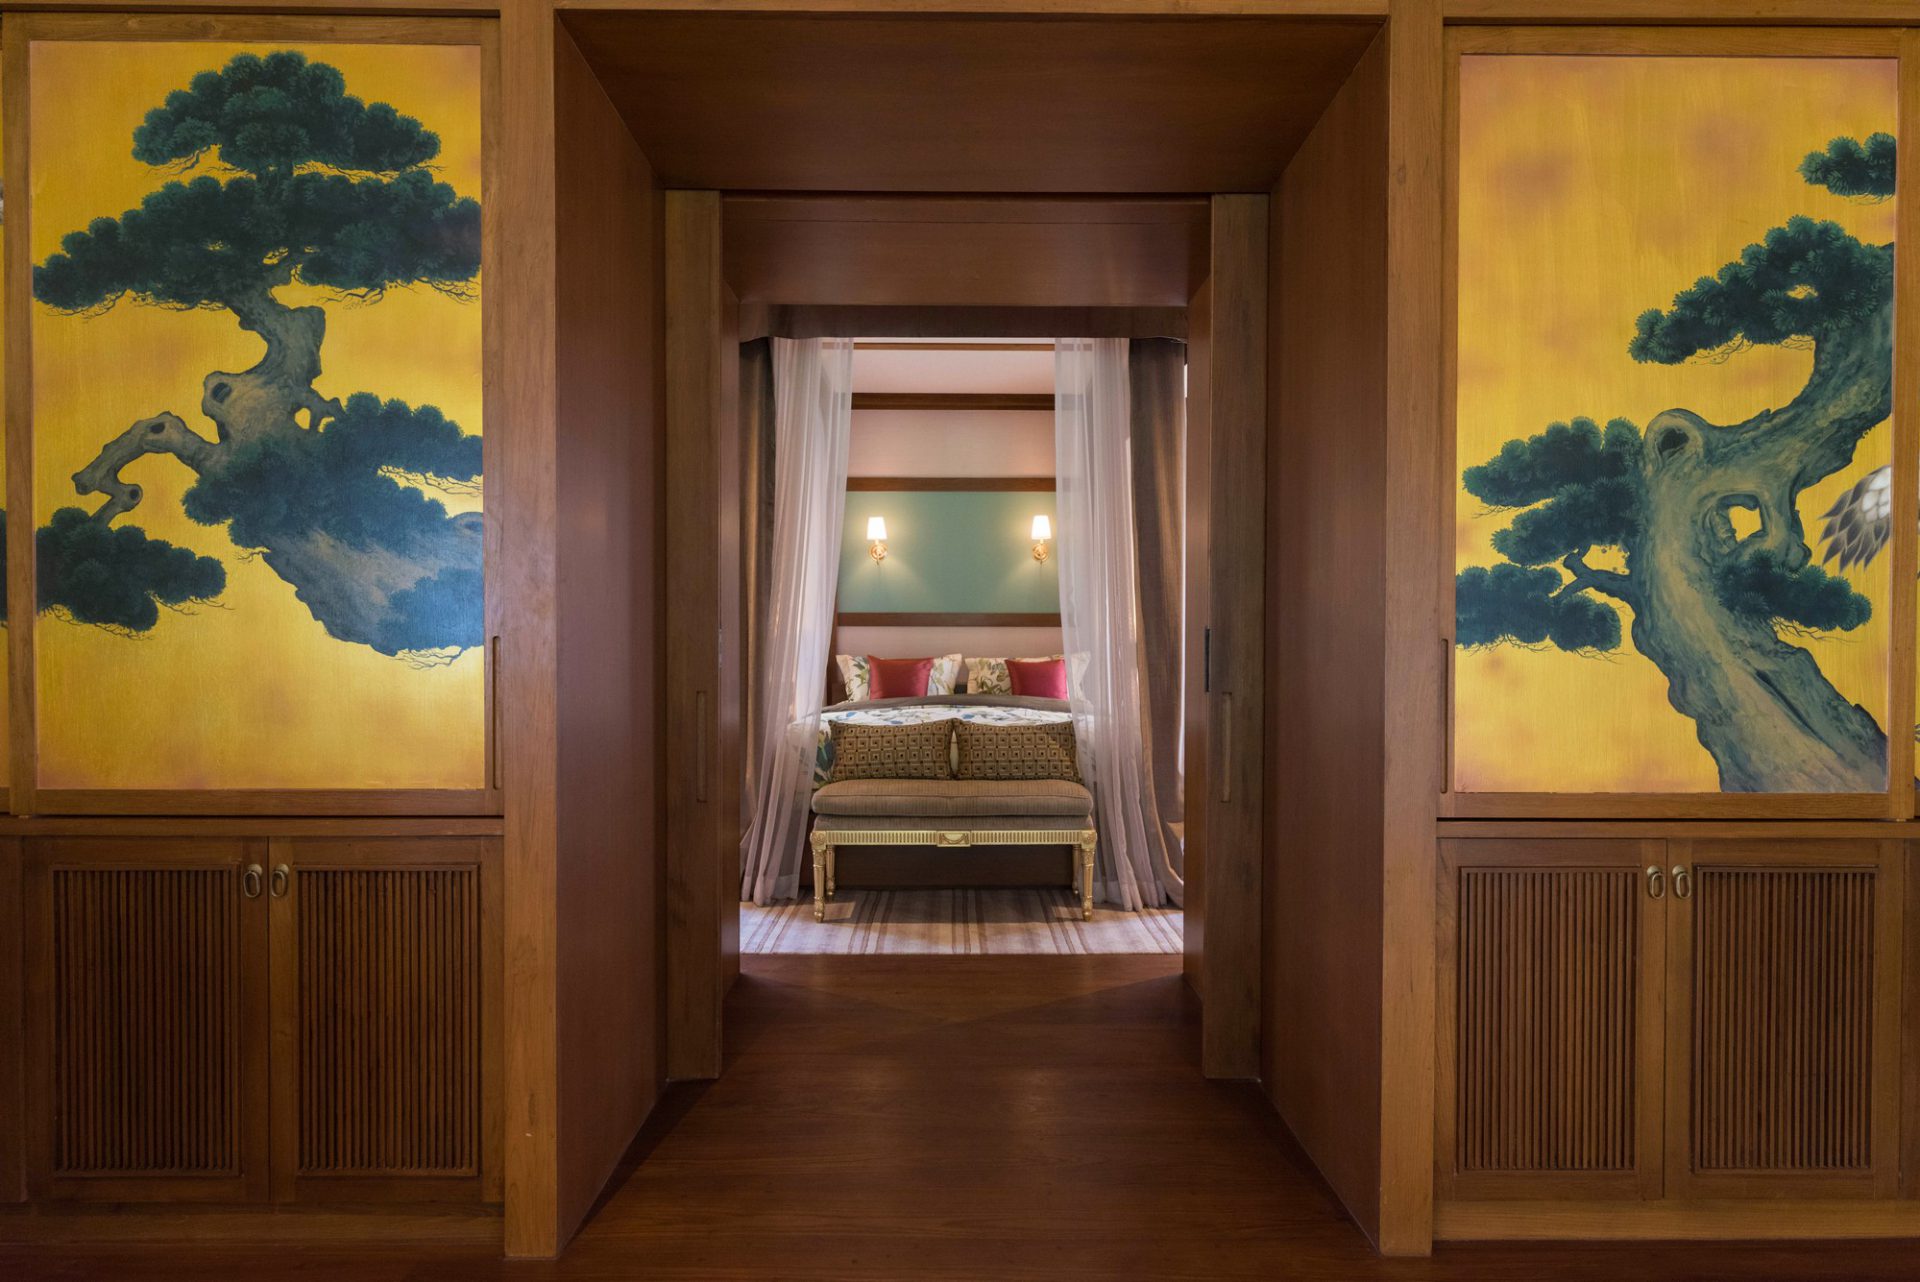 3-Bedroom Emperor Suite